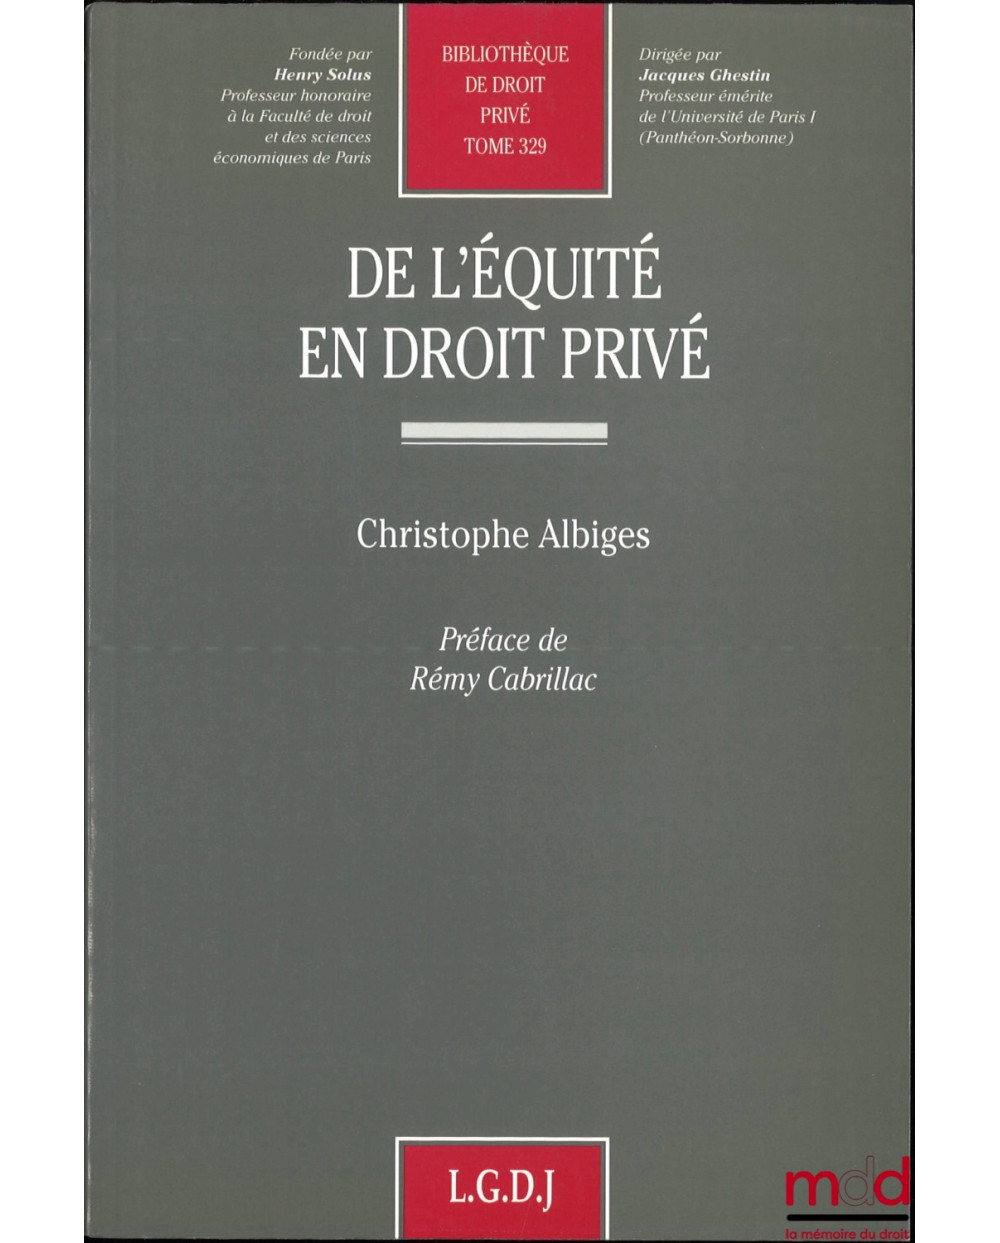 DE L’ÉQUITÉ EN DROIT PRIVÉ, Préface de Rémy Cabrillac, Bibl. de droit privé, t. 329